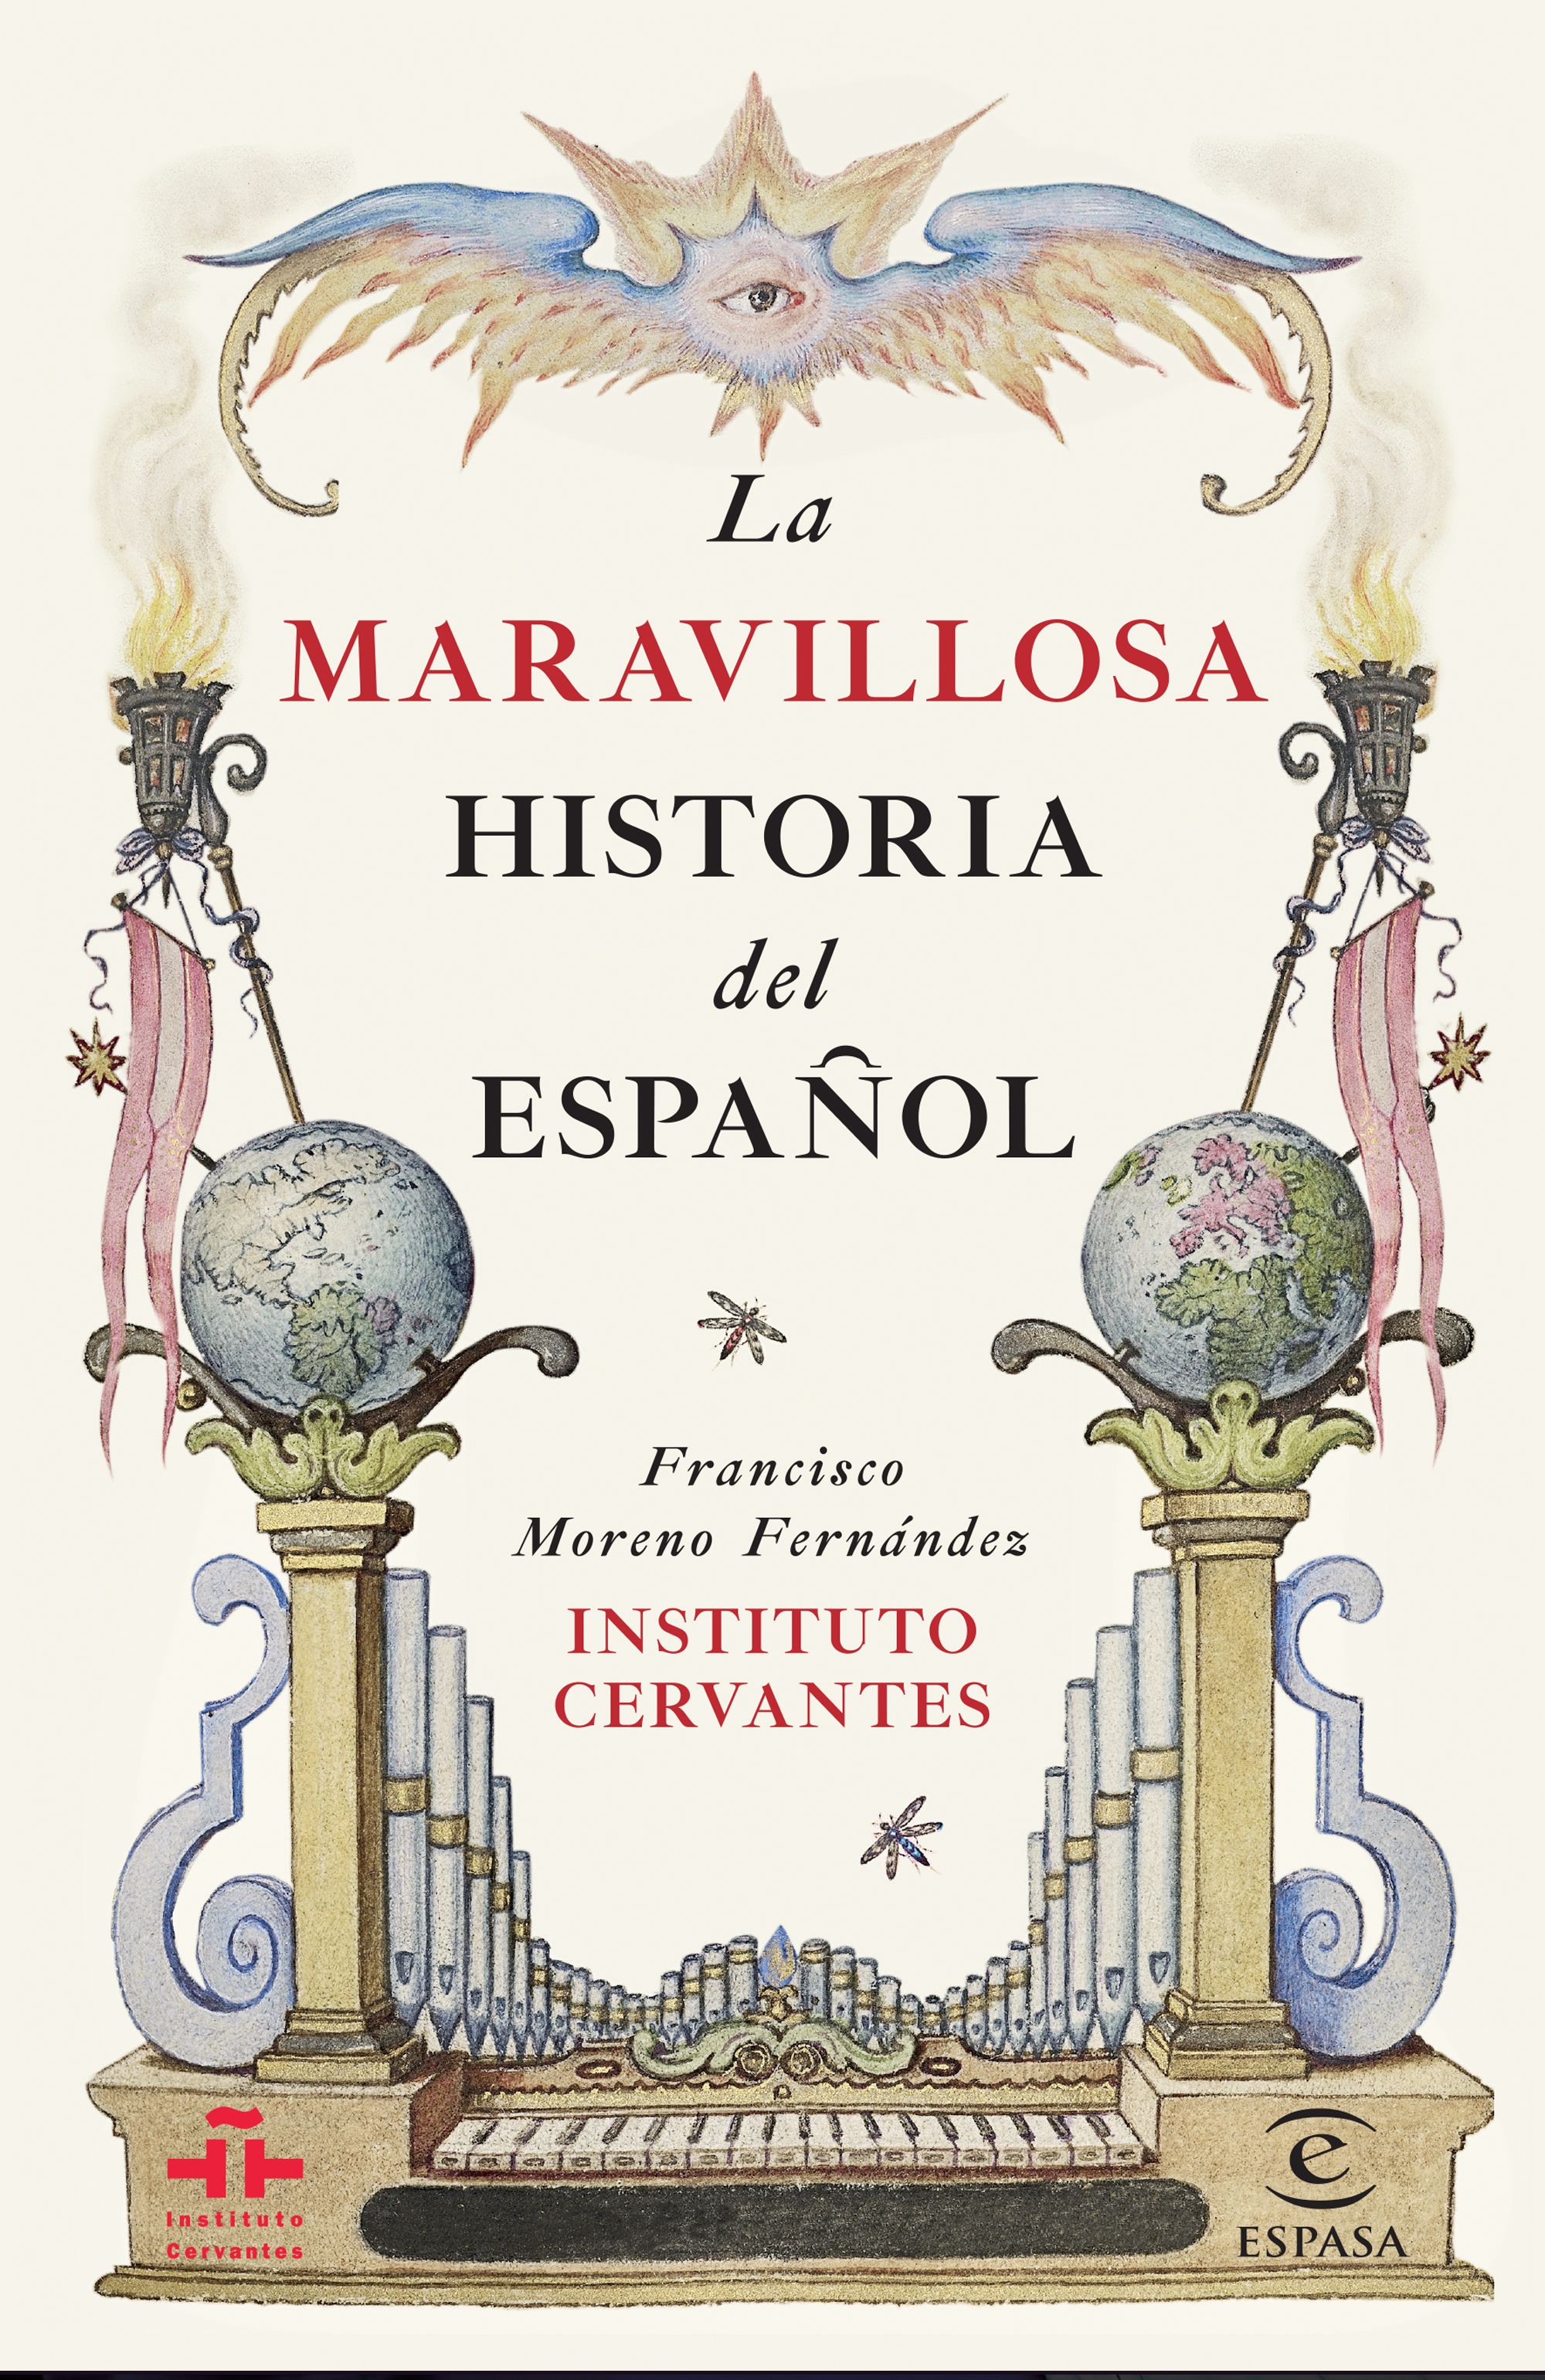 La maravillosa historia del espanol